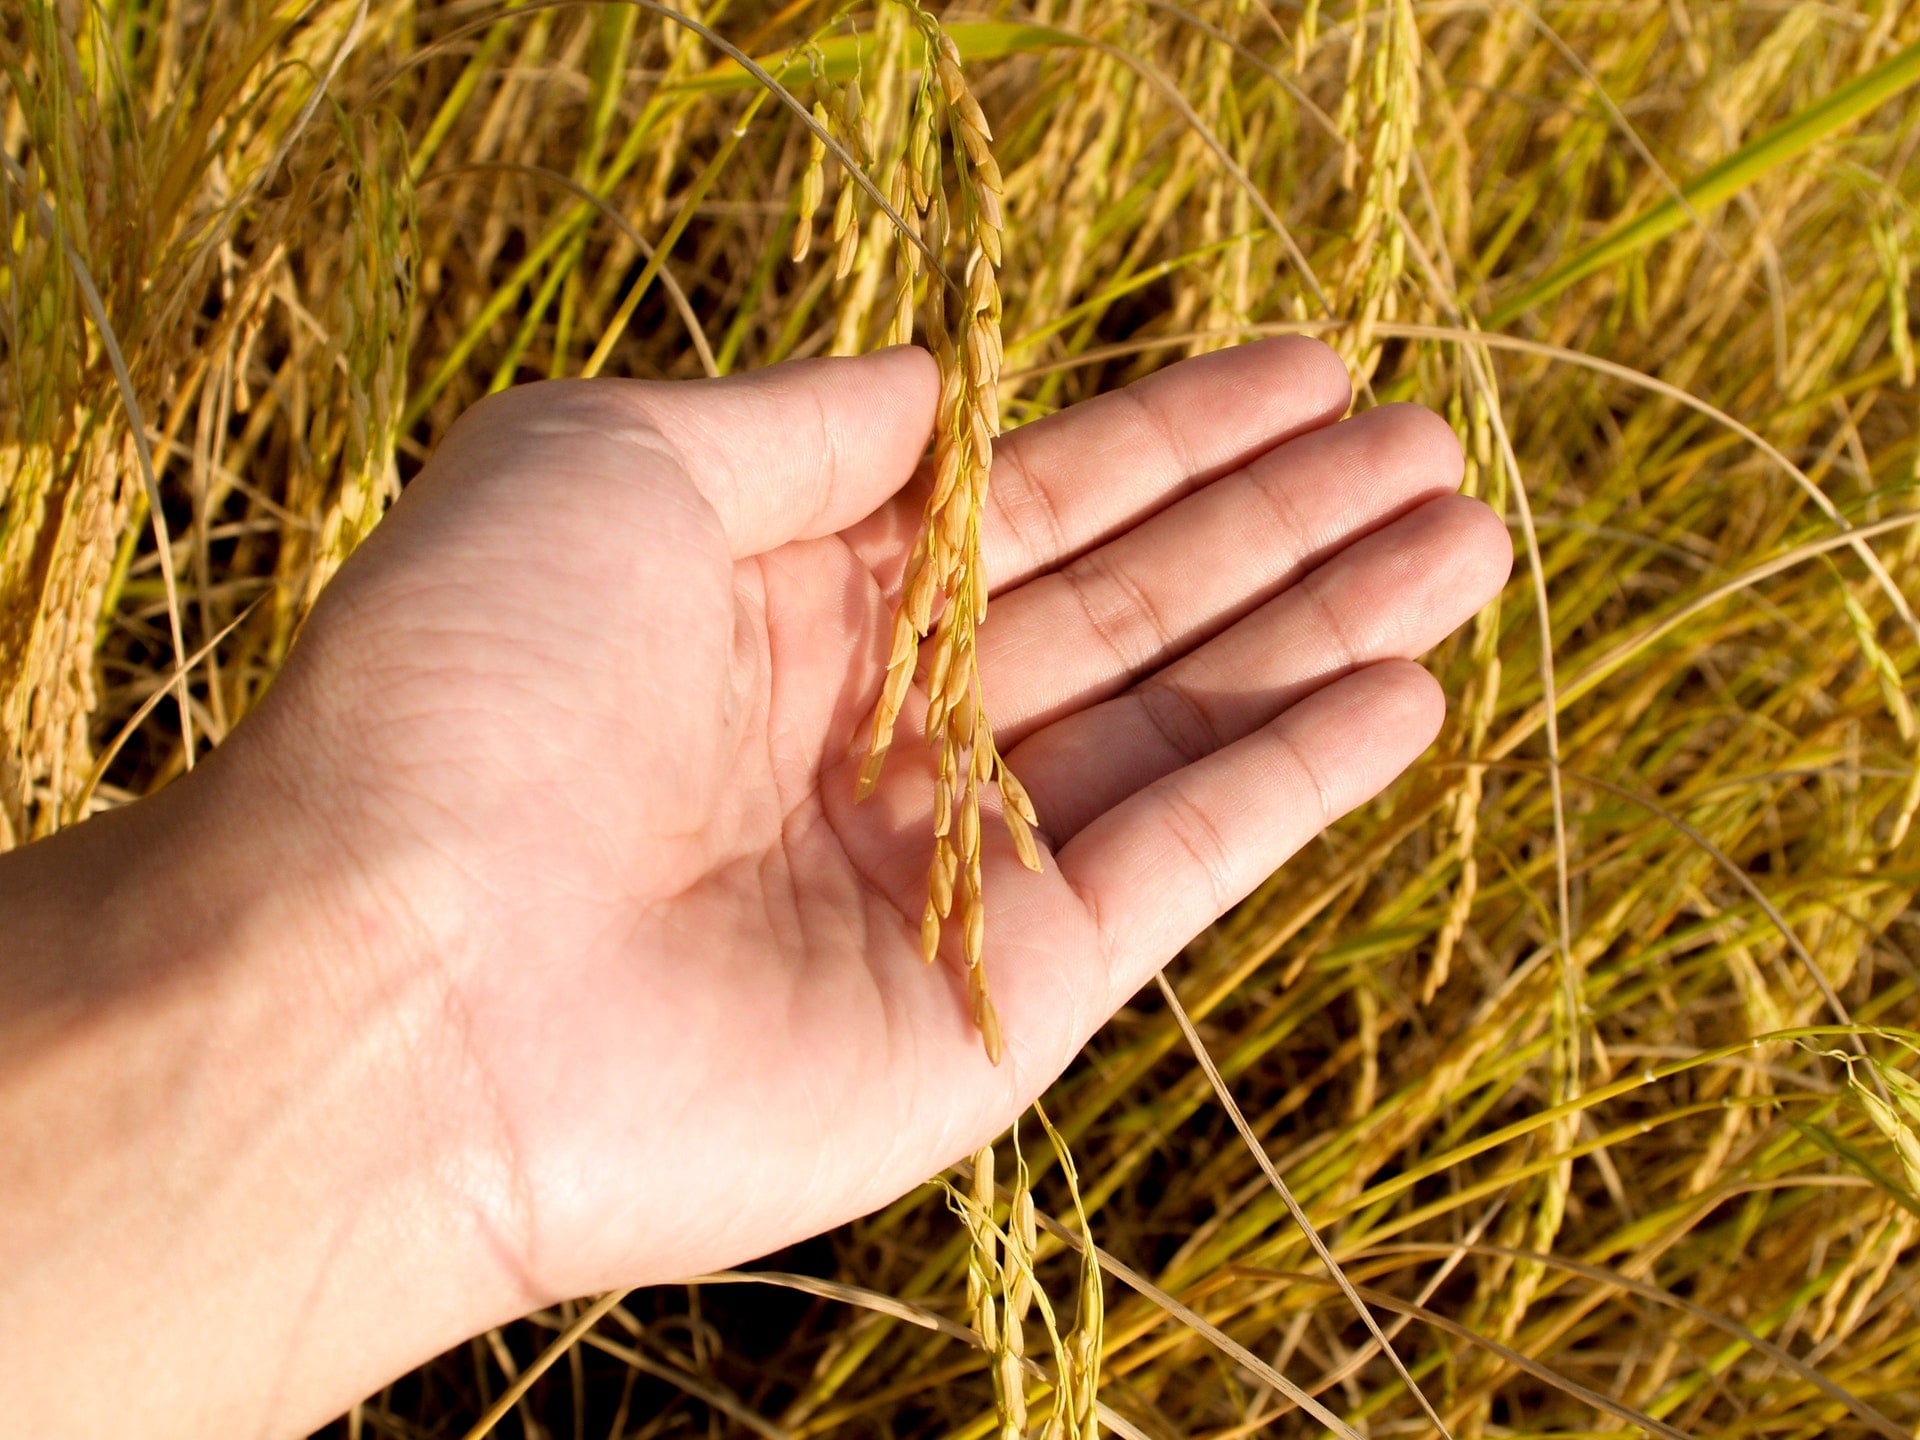 黑心米、農地工廠合法化 多事之秋 新鮮安全白米難找